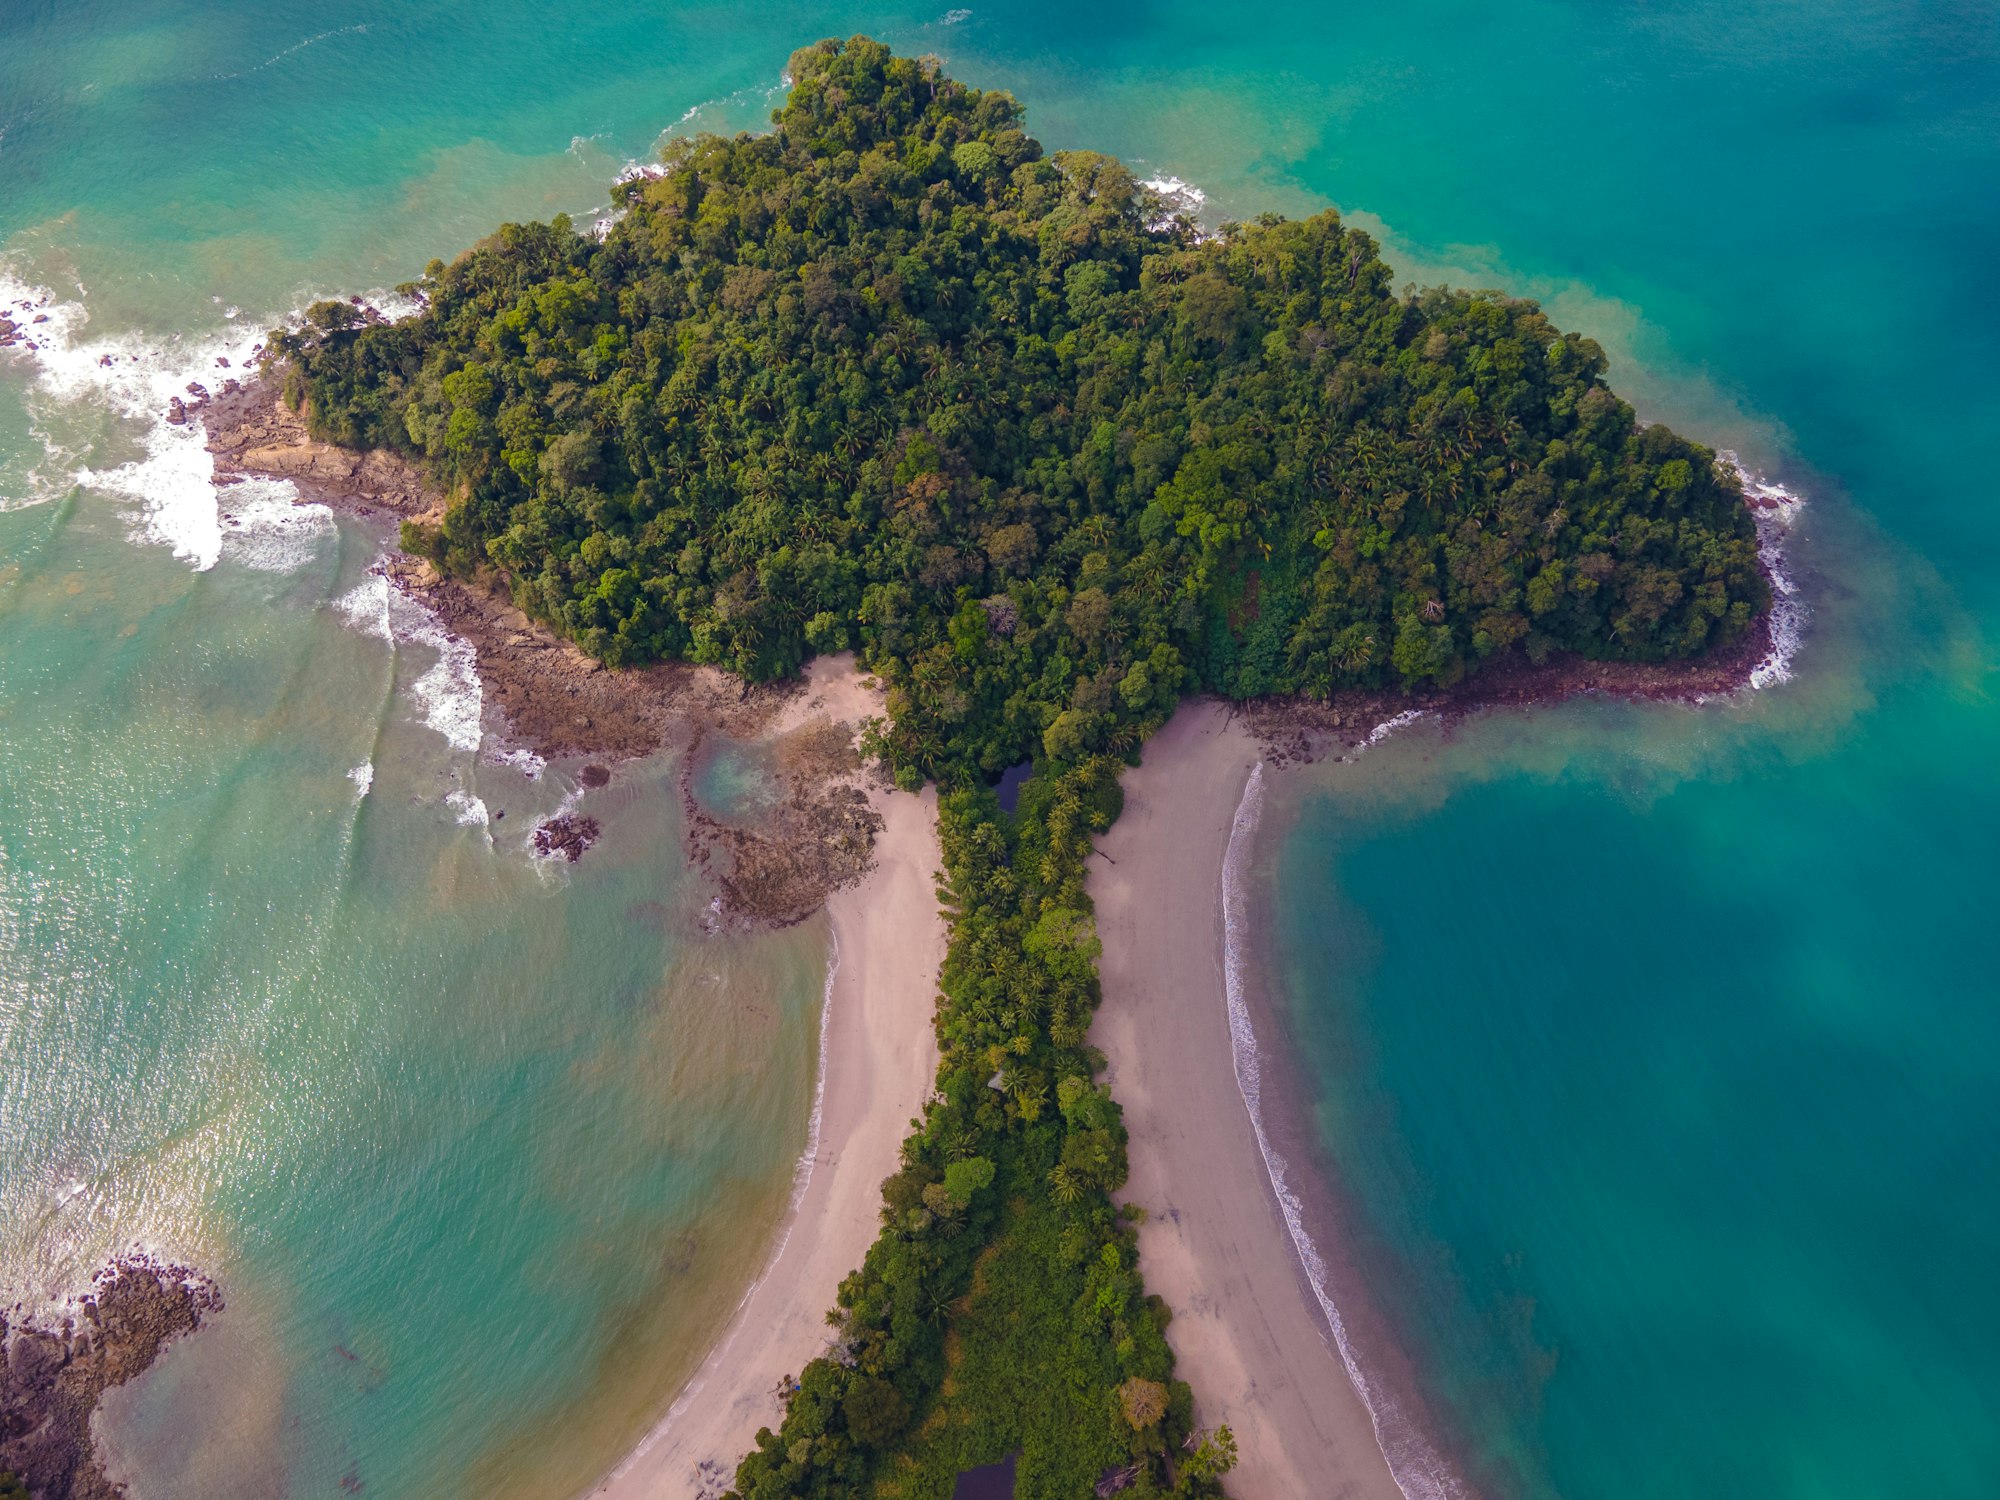 Ocean Tree at parque Nacional Manuel Antonio in Costa Rica.